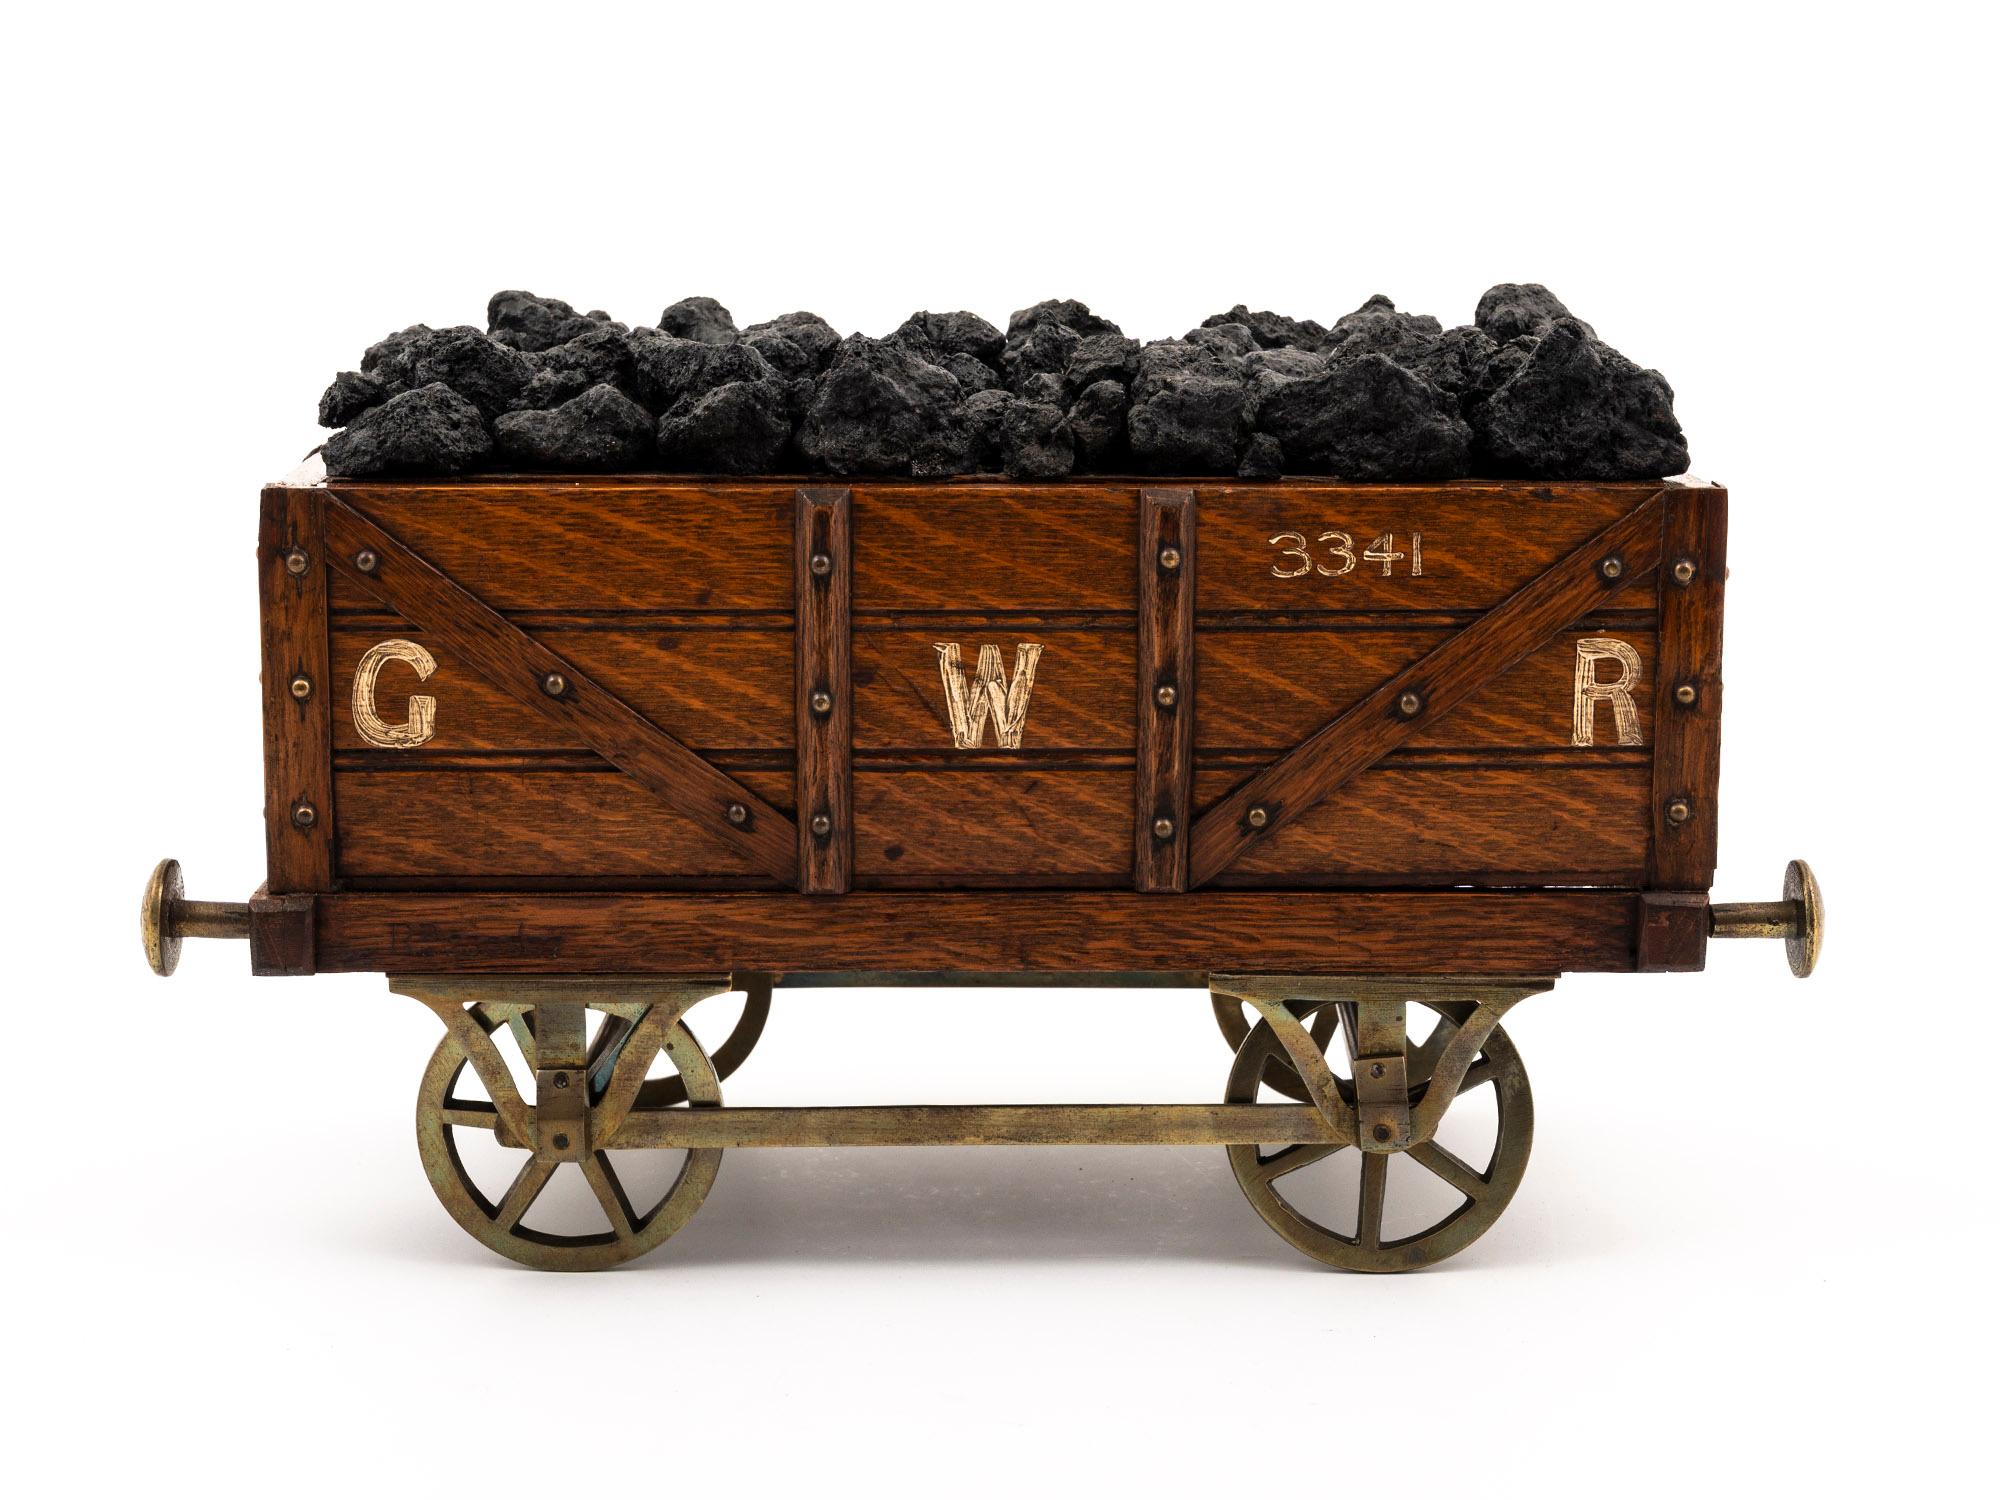 Formé de manière réaliste 

De notre Collection S, nous avons le plaisir de vous proposer cet Humidor original de la Great Western Railway Bogie Coal Wagon. L'humidificateur sculpté en chêne est modélisé comme un wagon à bogies de chemin de fer de